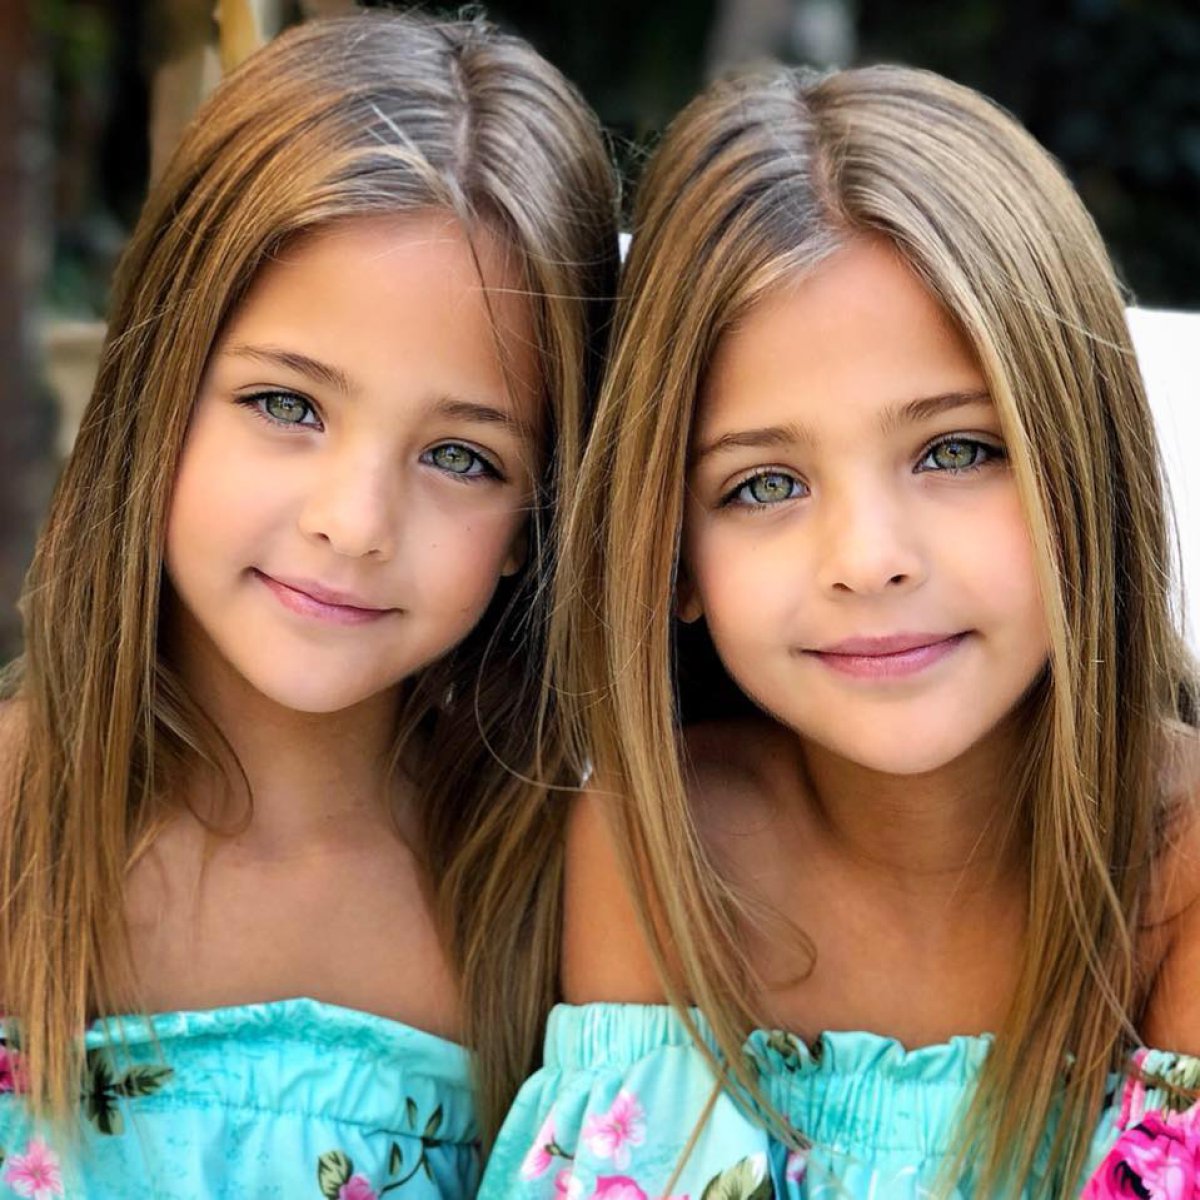 Conoce a las gemelas más bellas del mundo que todos quieren conocer